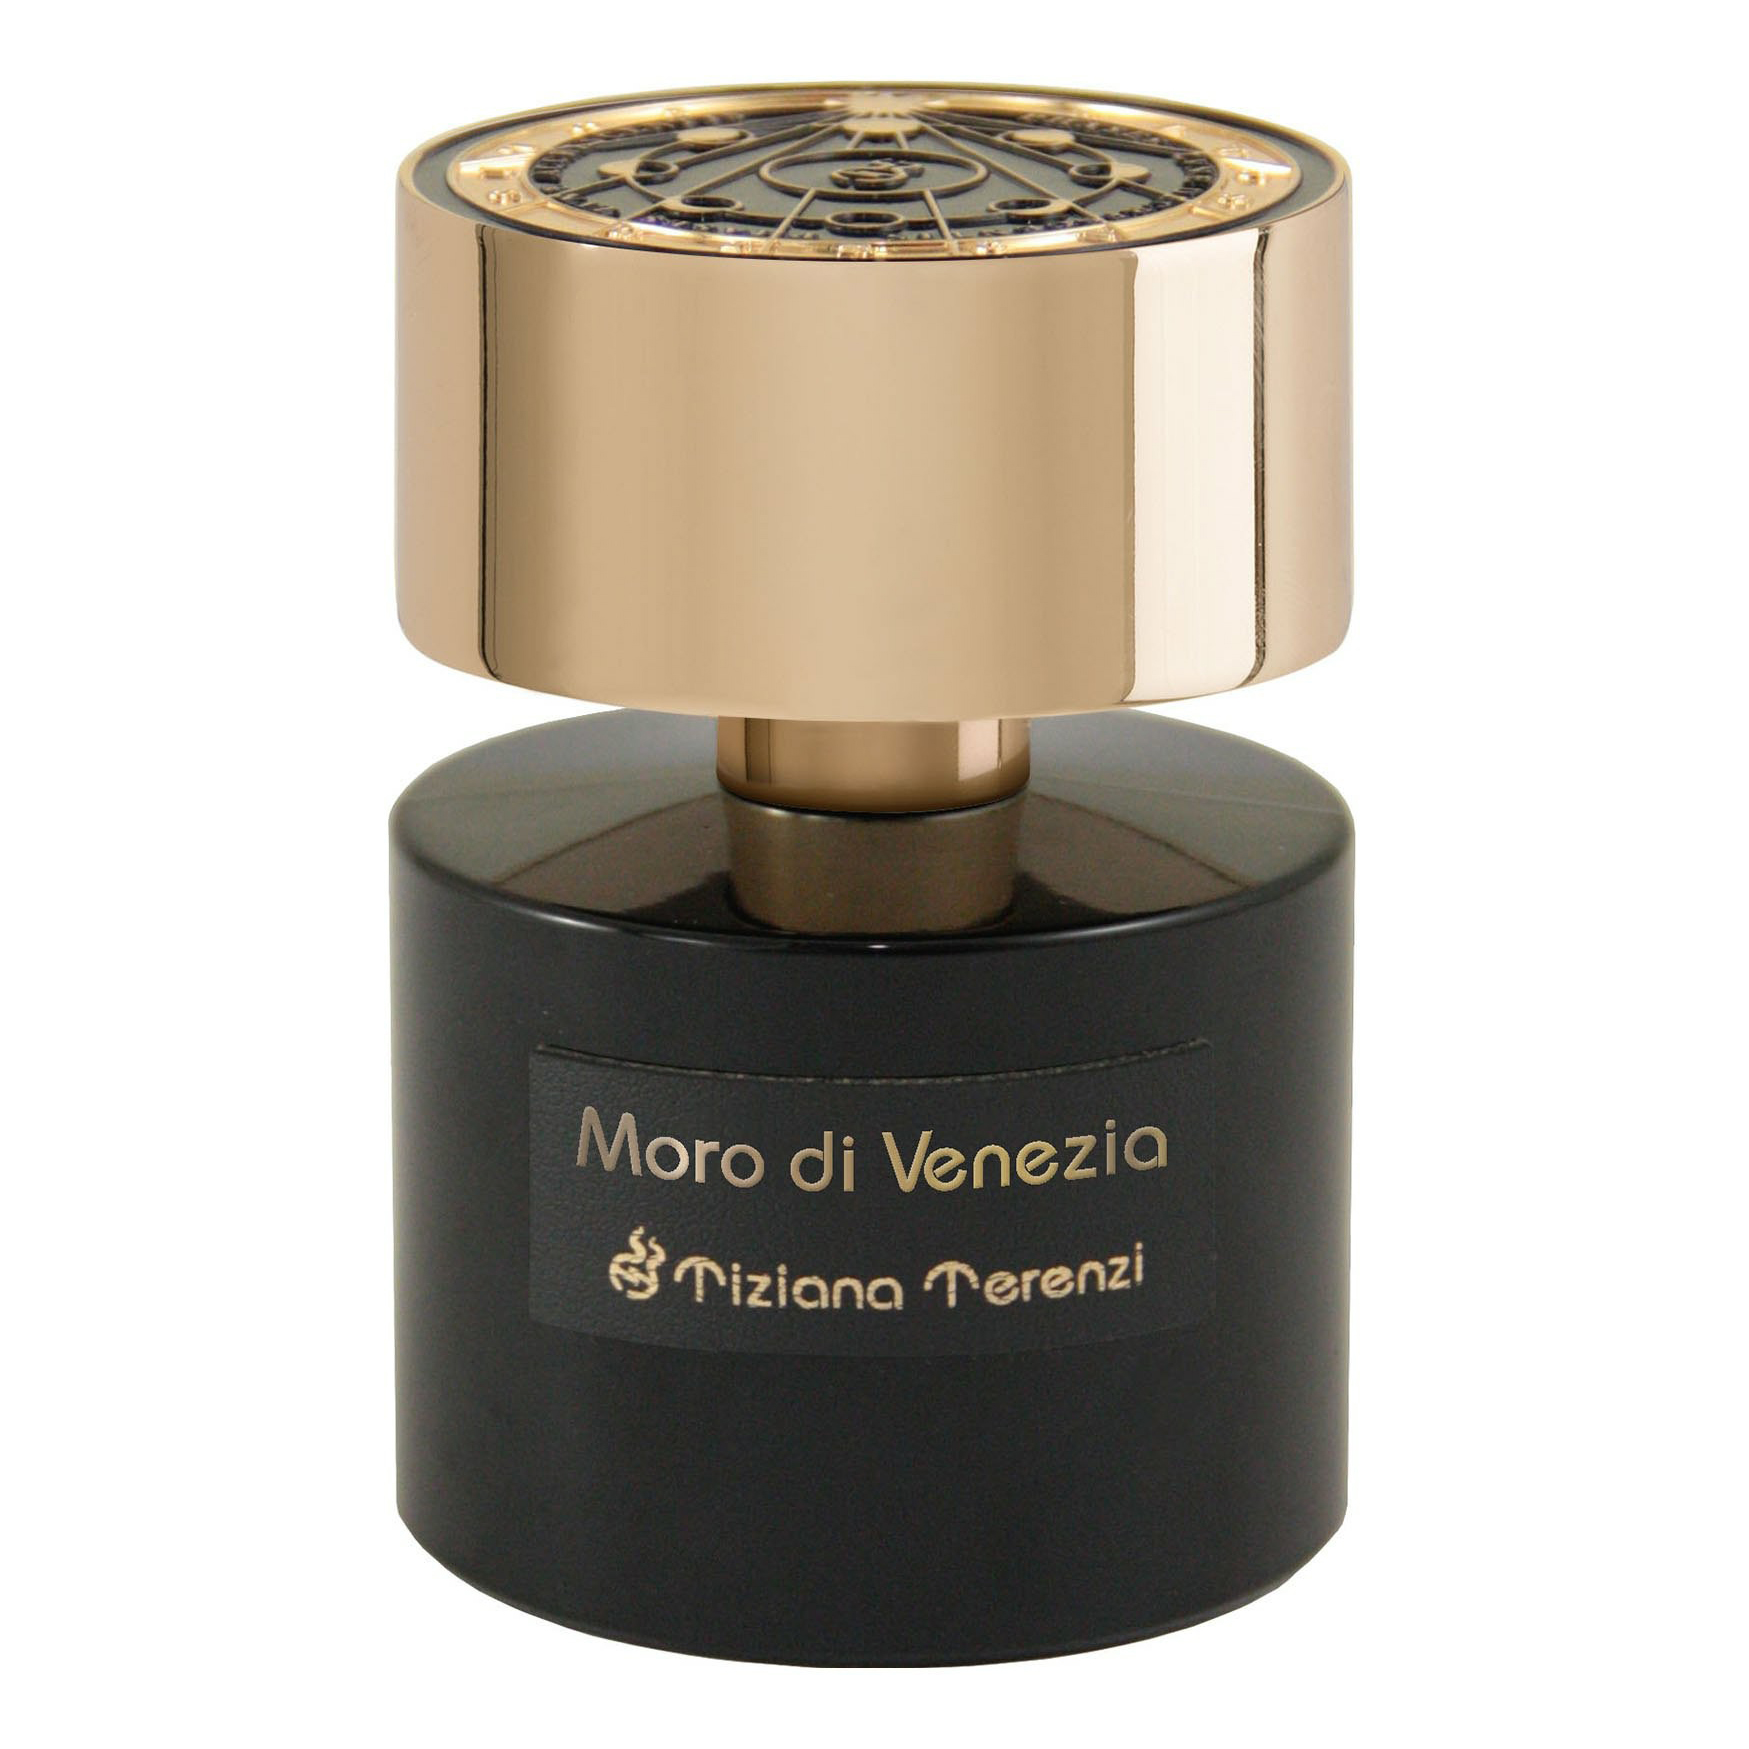 Духи Tiziana Terenzi Moro di Venezia Extrait de Parfum, 100 мл духи tiziana terenzi gumin 2021 extrait de parfum 100 мл